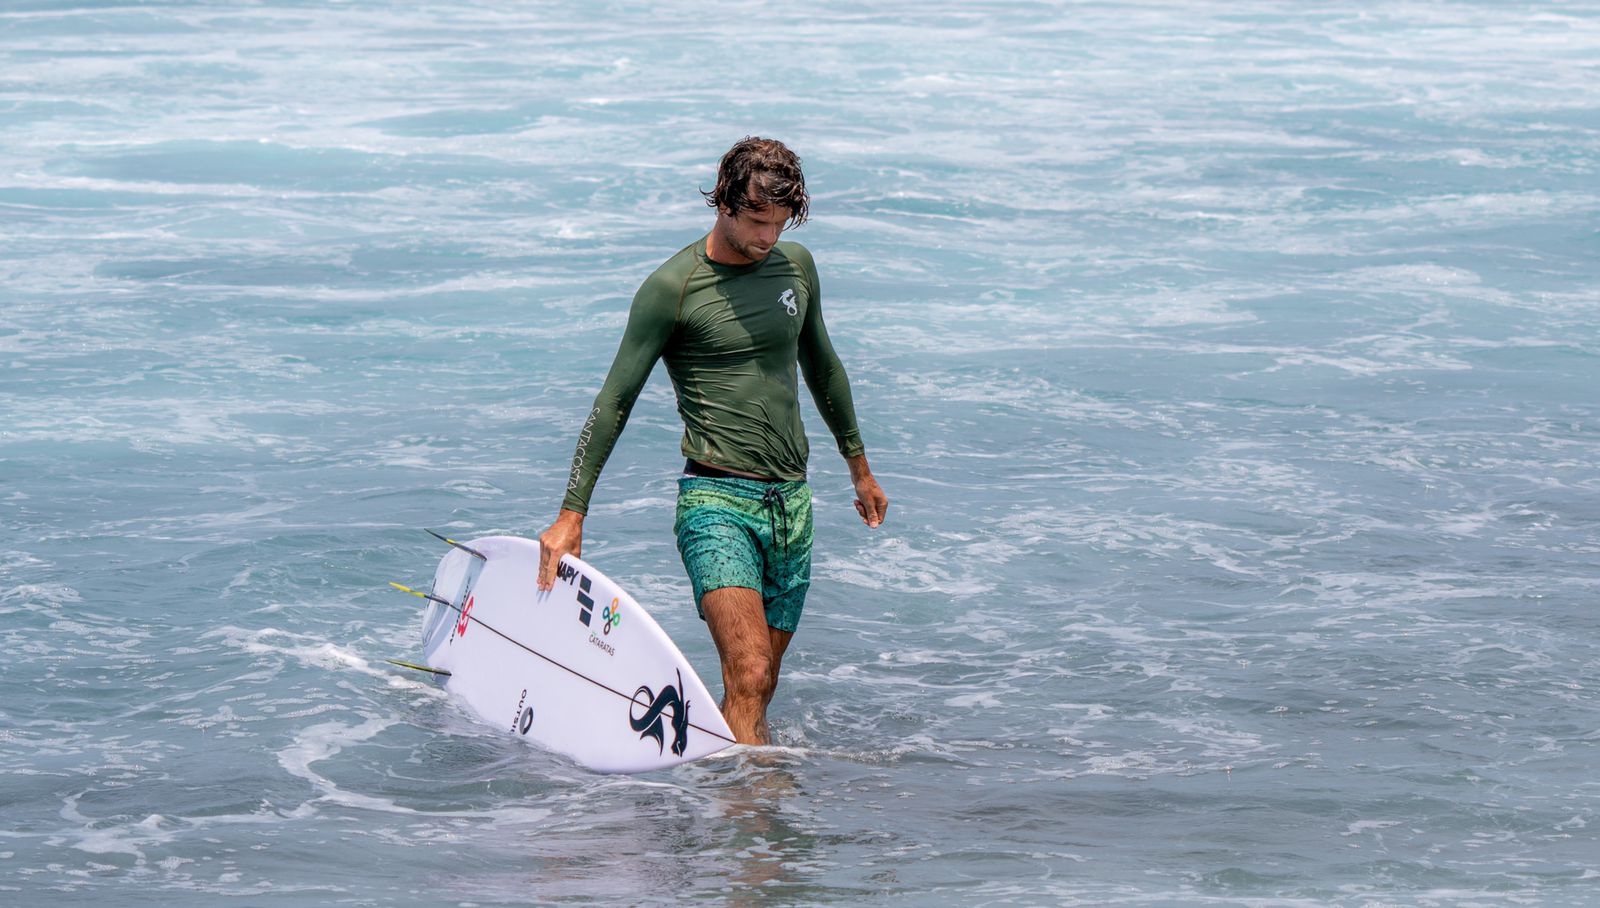 Entrevista com “Matheus Navarro”: o surf é um estilo de vida que nos faz refletir com suas metáforas sobre o nosso cotidiano e sobre o mundo